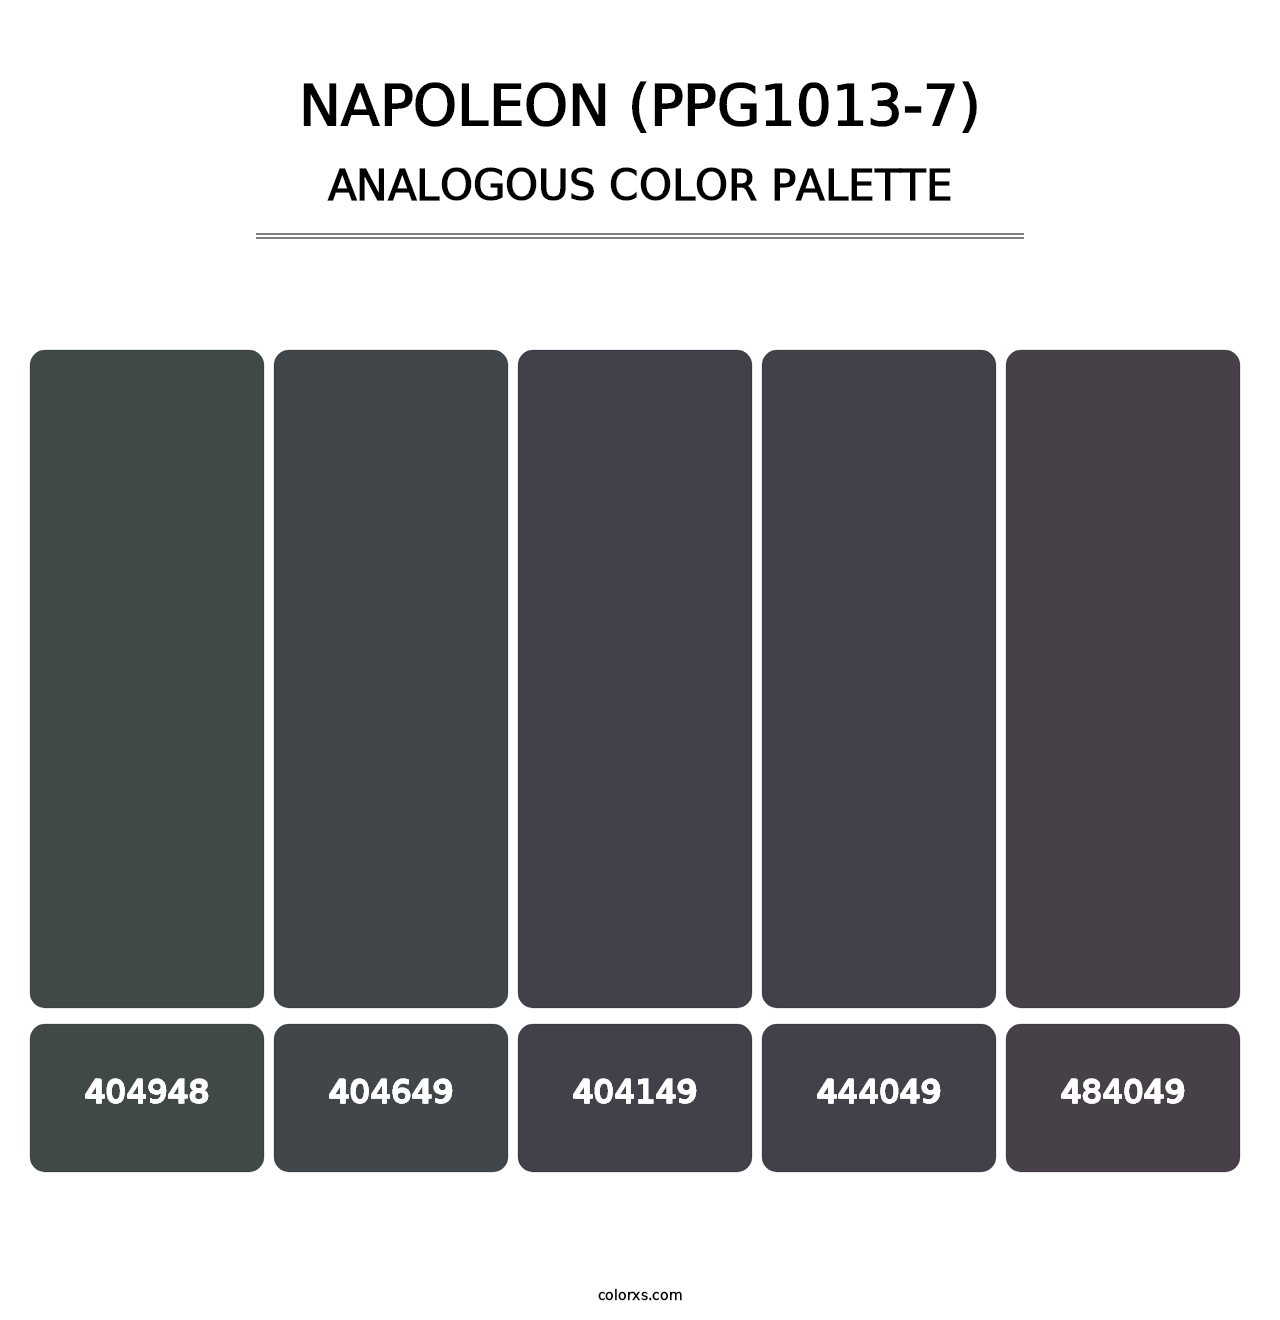 Napoleon (PPG1013-7) - Analogous Color Palette